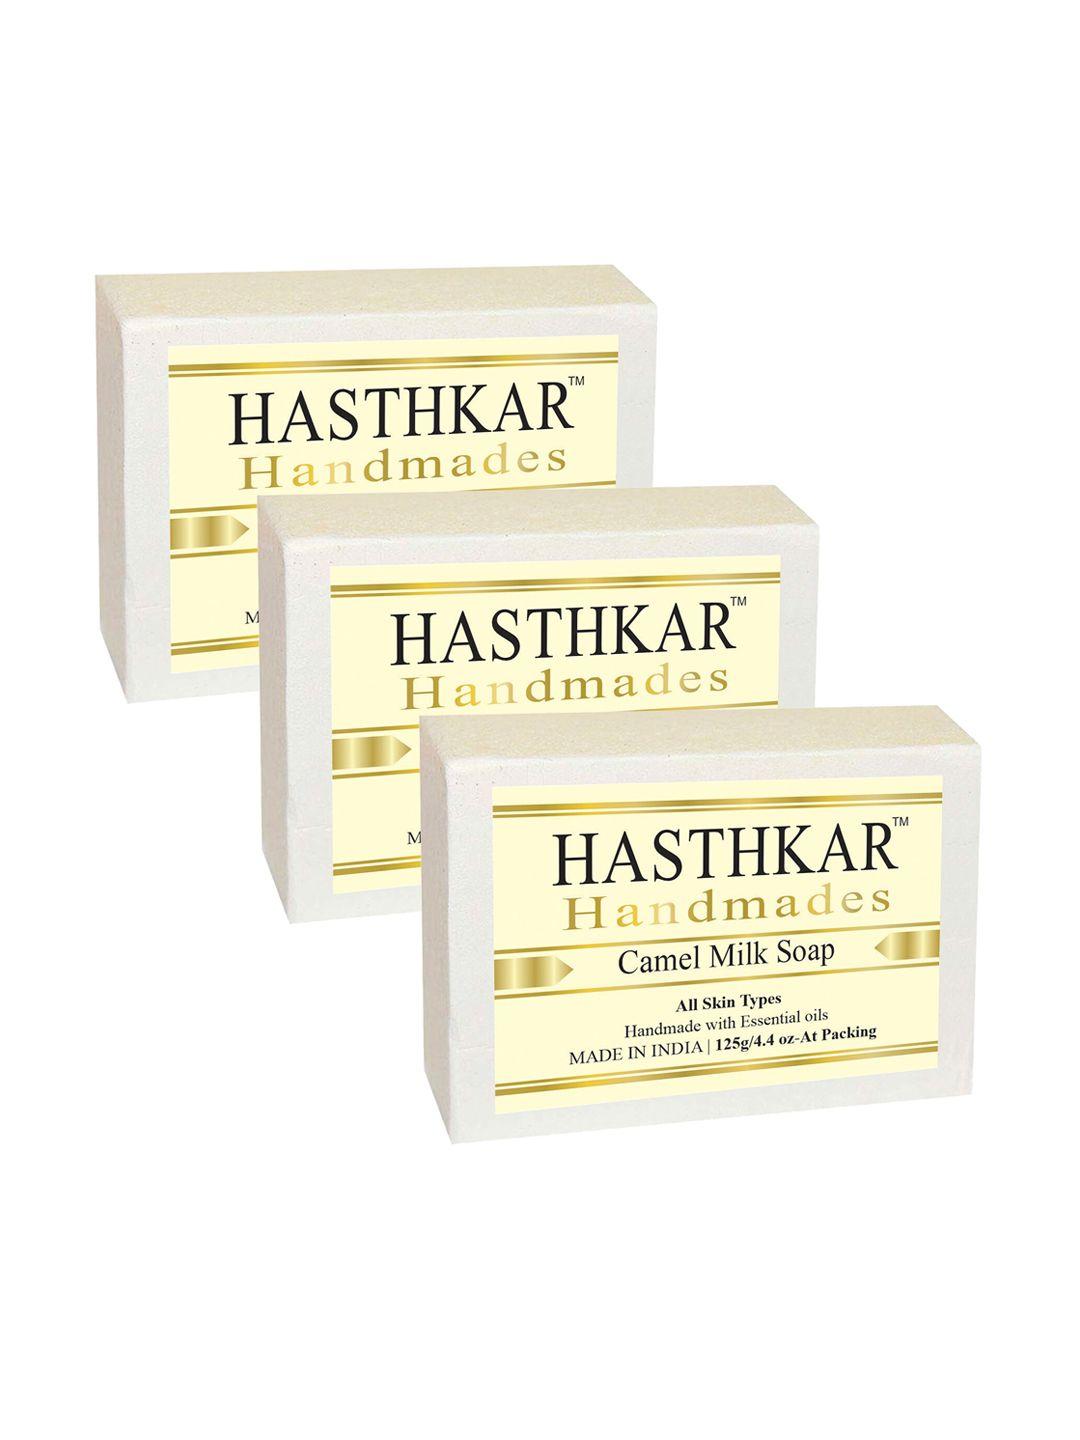 hasthkar set of 3 handmade camel milk soaps for all skin types - 125 g each